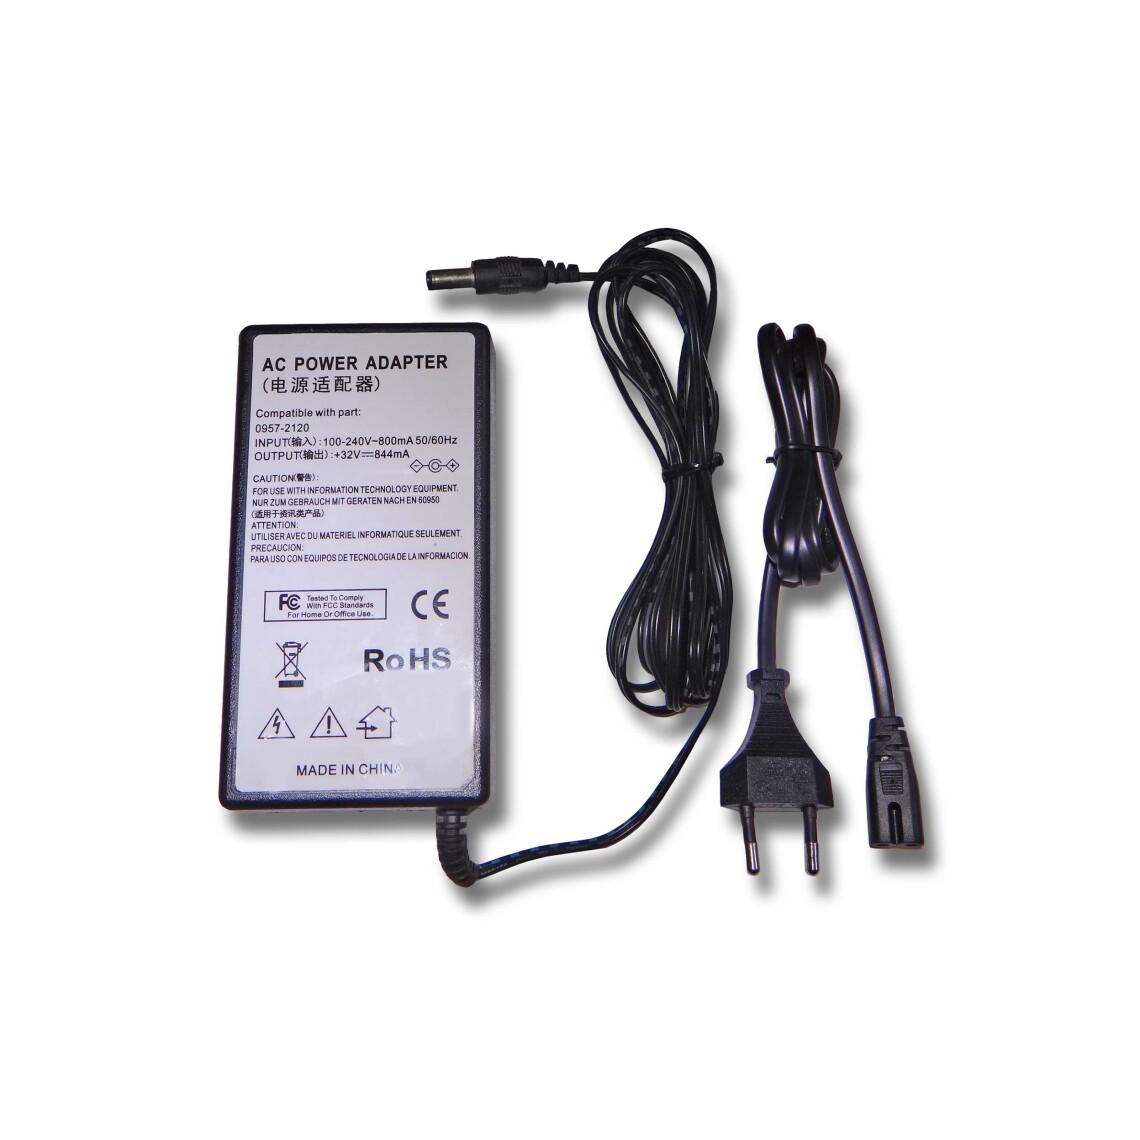 Vhbw - vhbw Imprimante Adaptateur bloc d'alimentation Câble d'alimentation Chargeur compatible avec HP Photosmart 330, 420, 422, 425 imprimante - 0.844A - Accessoires alimentation